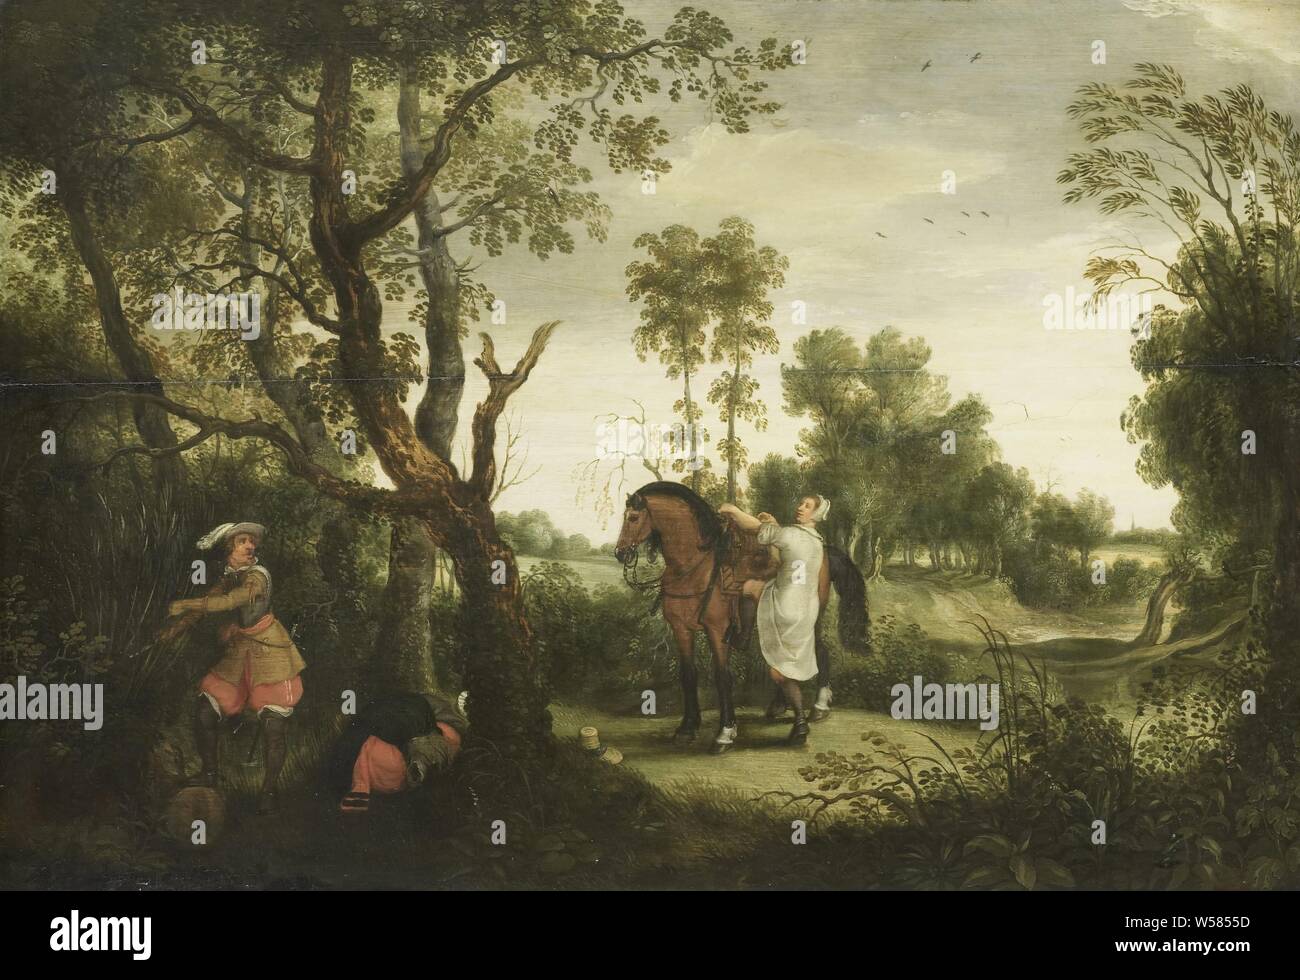 Le voleur puni, puni le voleur. Sur la route entre Bruxelles et Thienen est une femme qui a été dépouillé de ses vêtements par un coureur espagnol, elle utilise un moment d'inattention pour monter et fuir son cheval., Sebastiaan Vrancx, 1600 - 1647, de bord, de la peinture à l'huile (peinture), h 45,5 cm × w 65 cm d 5 cm Banque D'Images